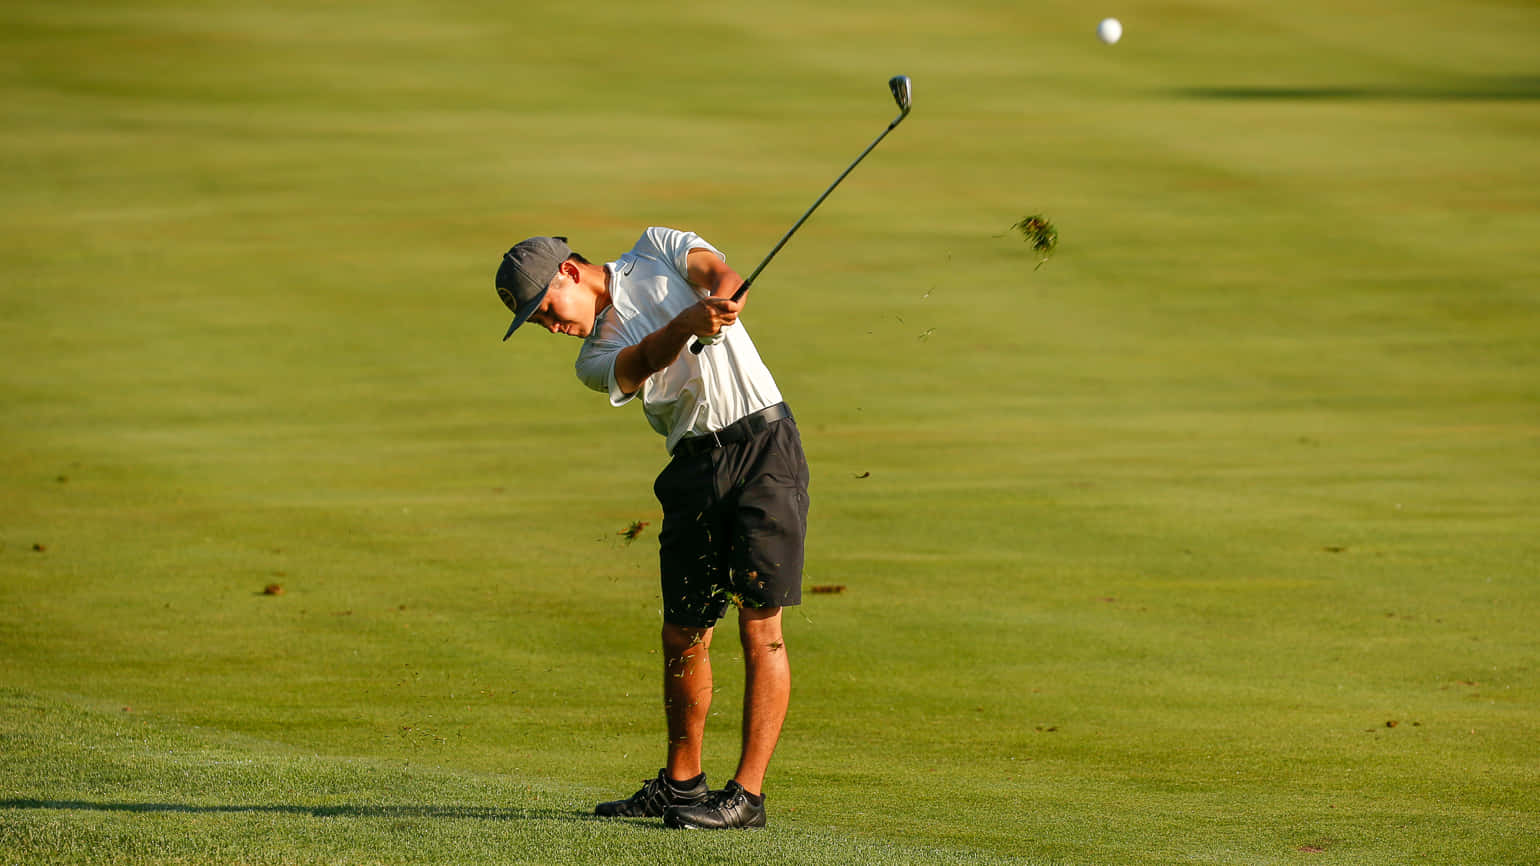 Shigekimaruyama En El Campo De Golf. Fondo de pantalla